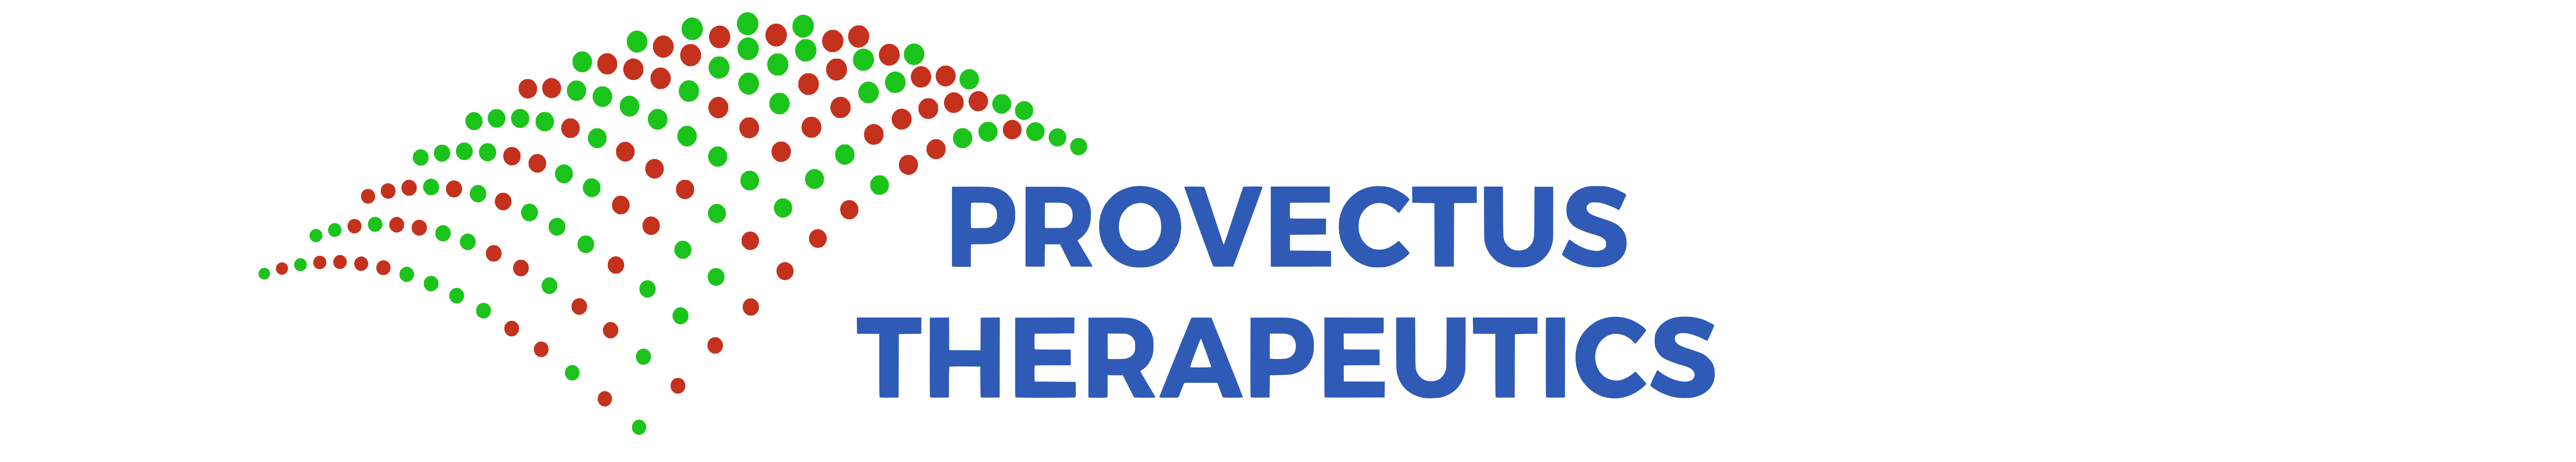 Provectus Therapeutics